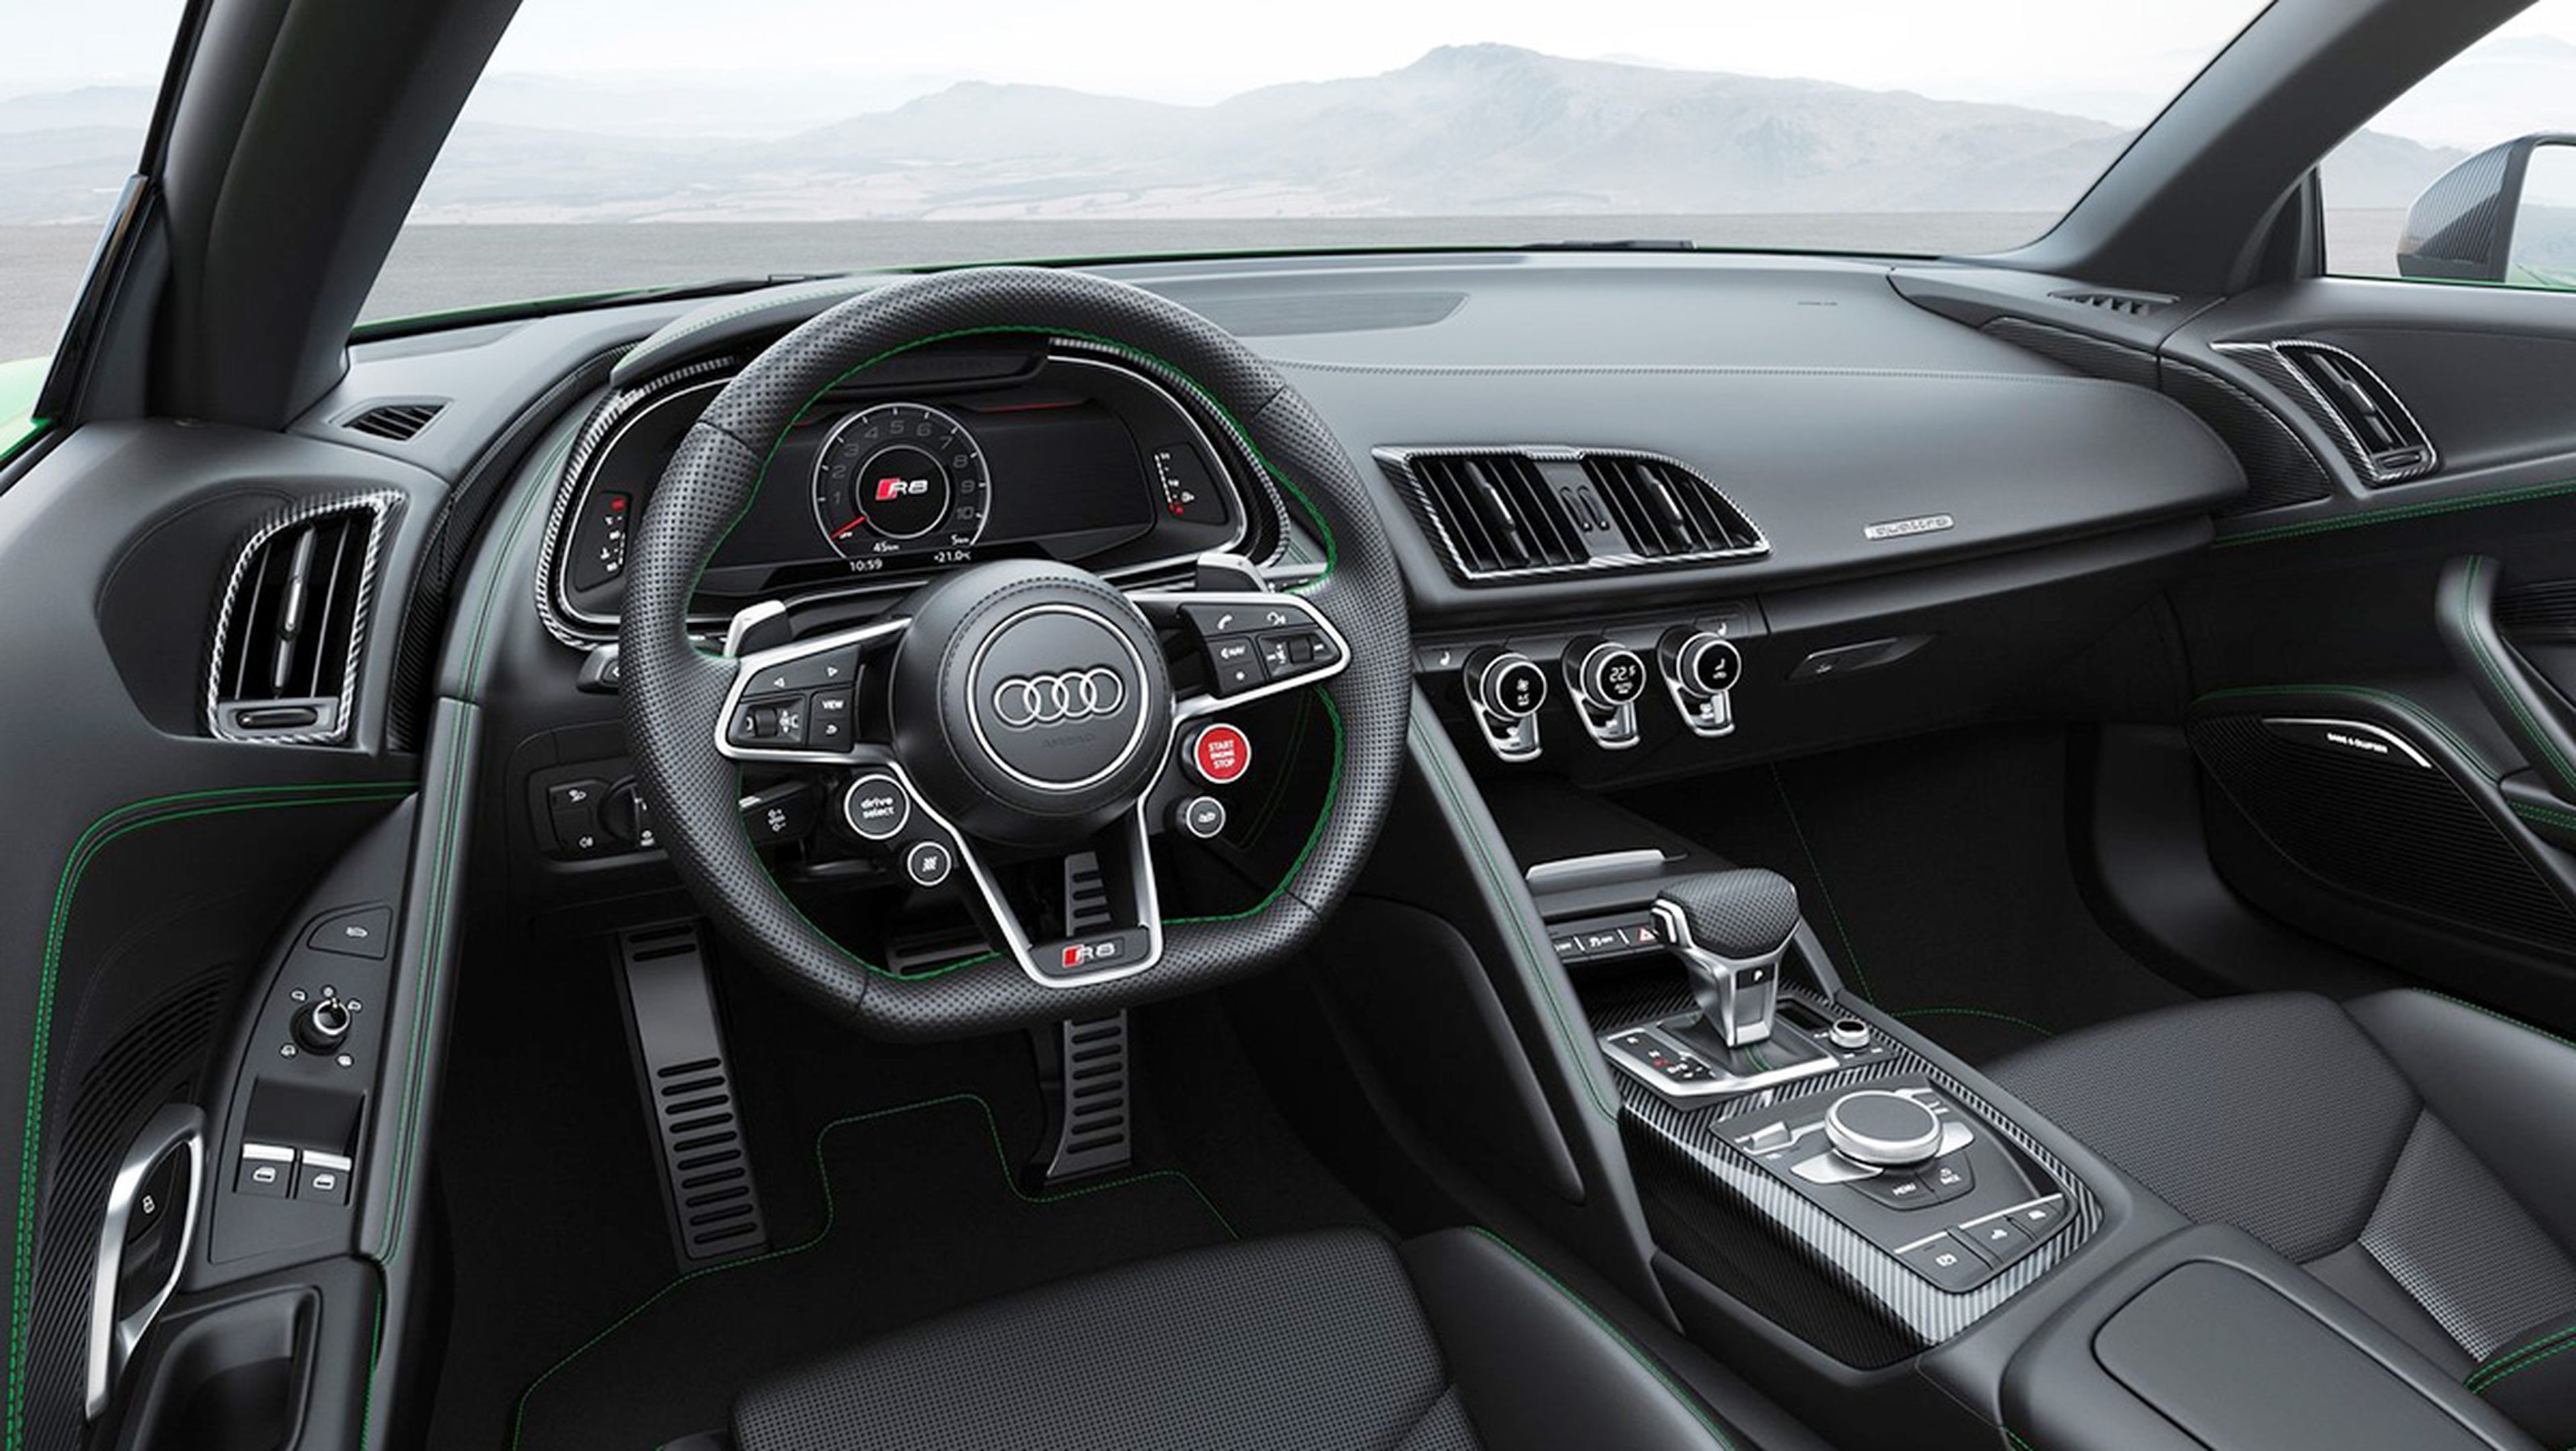 Las novedades de Audi para el Salón de Frankfurt 2017 - Audi R8 Spyder V10 plus